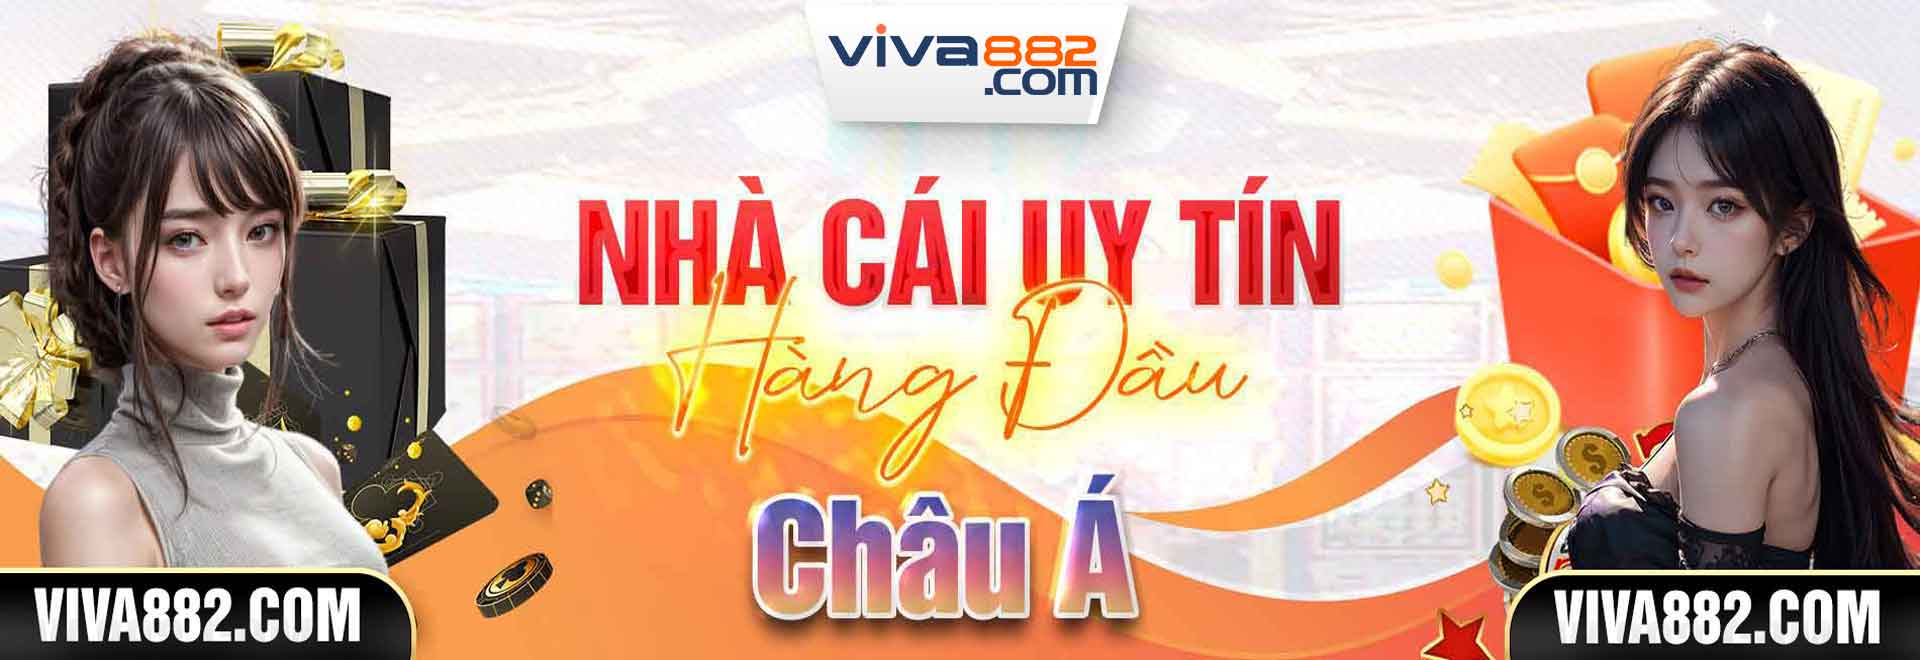 Viva88 Nhà cái uy tín hàng đầu Châu Á